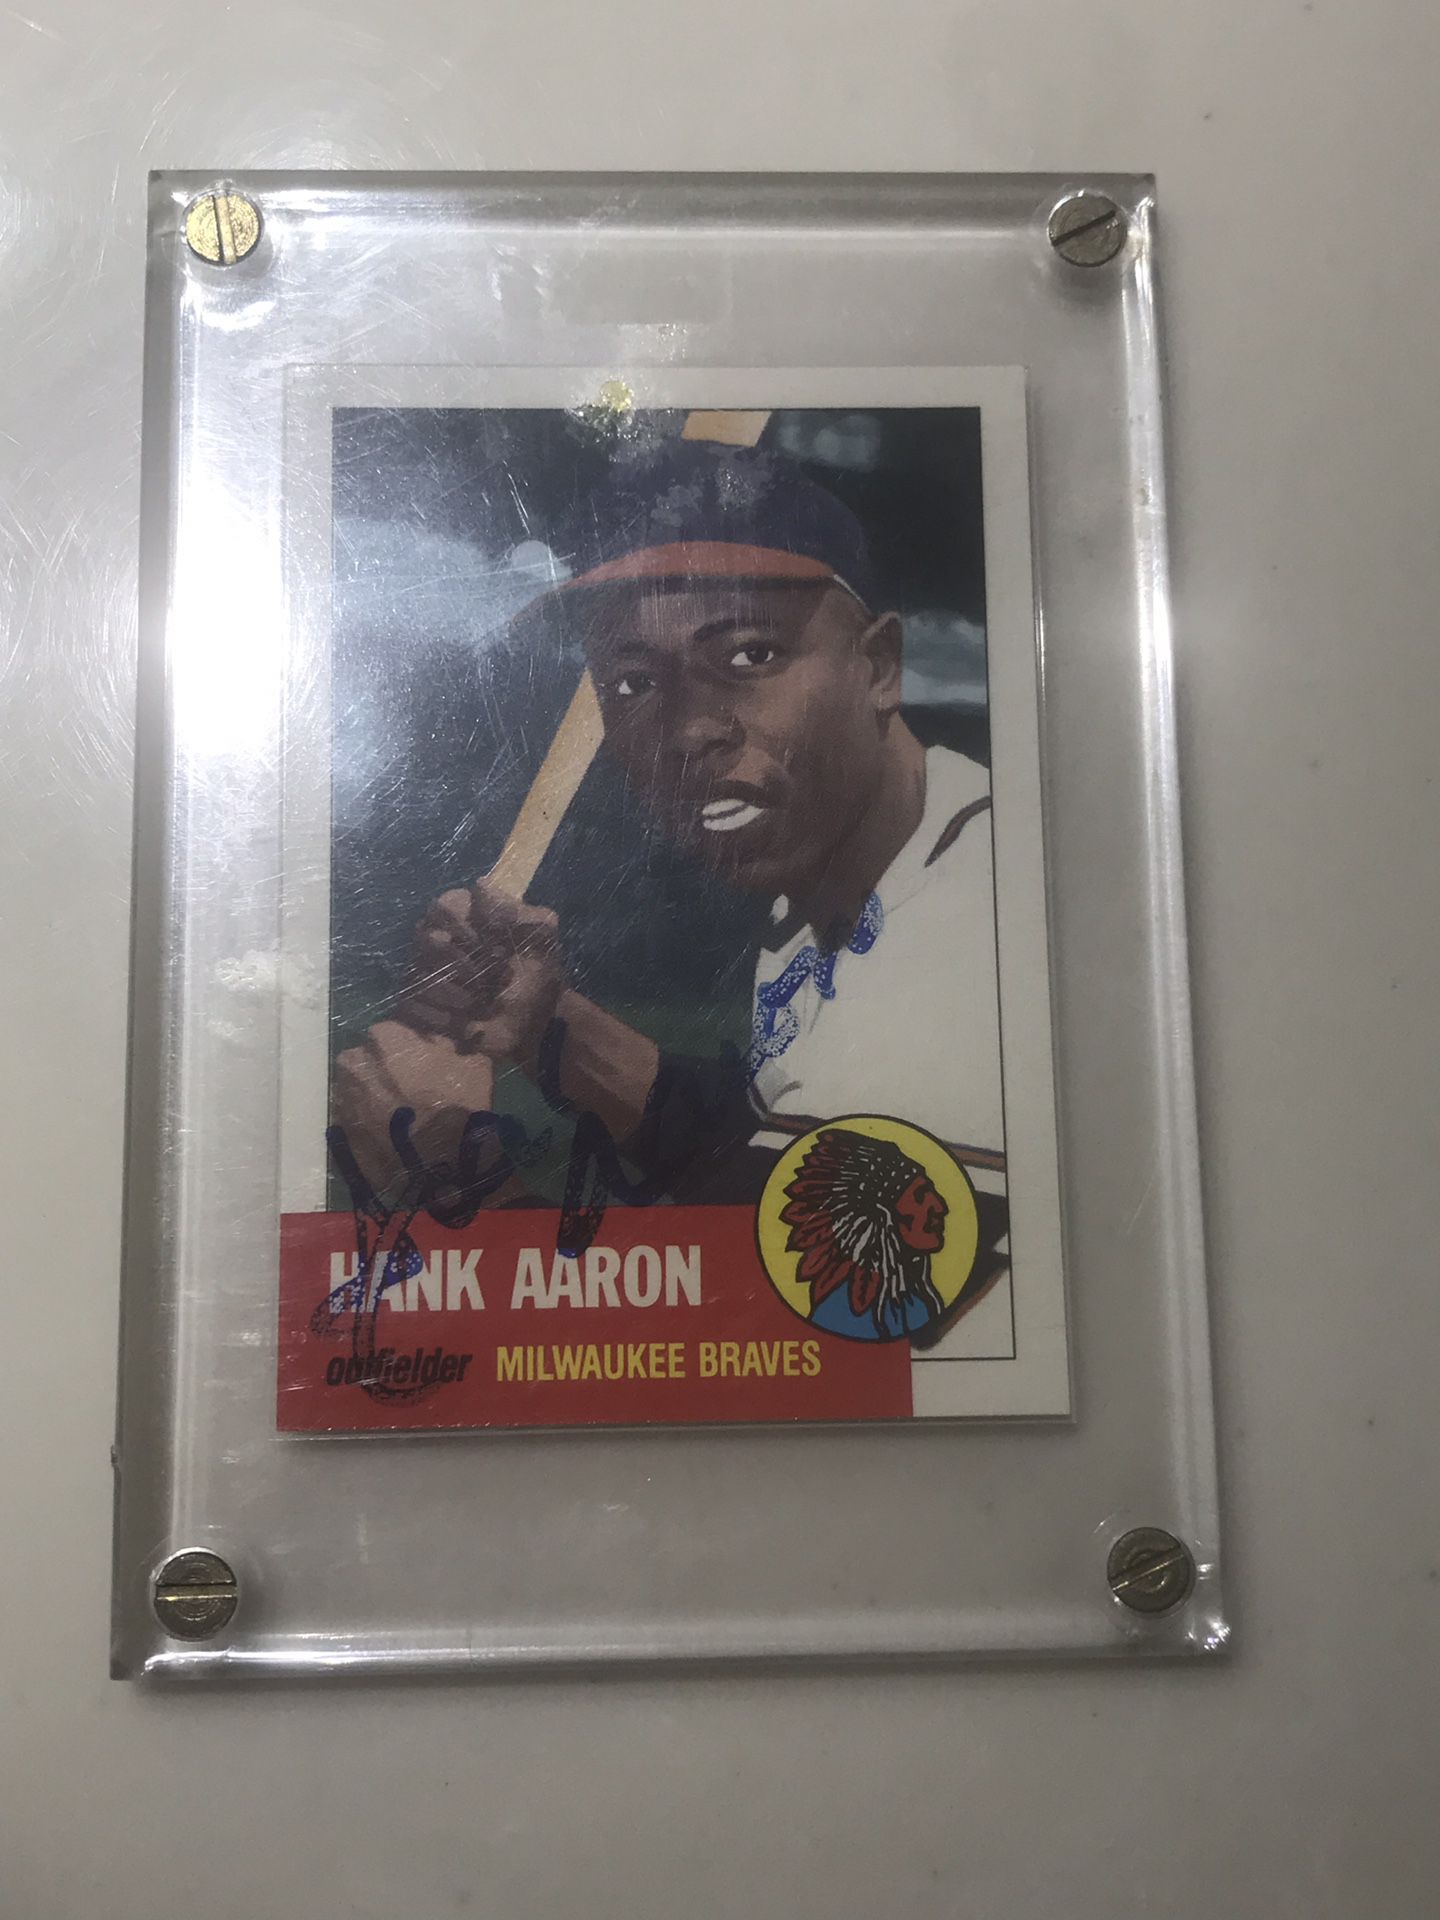 Hank Aaron signed baseball card